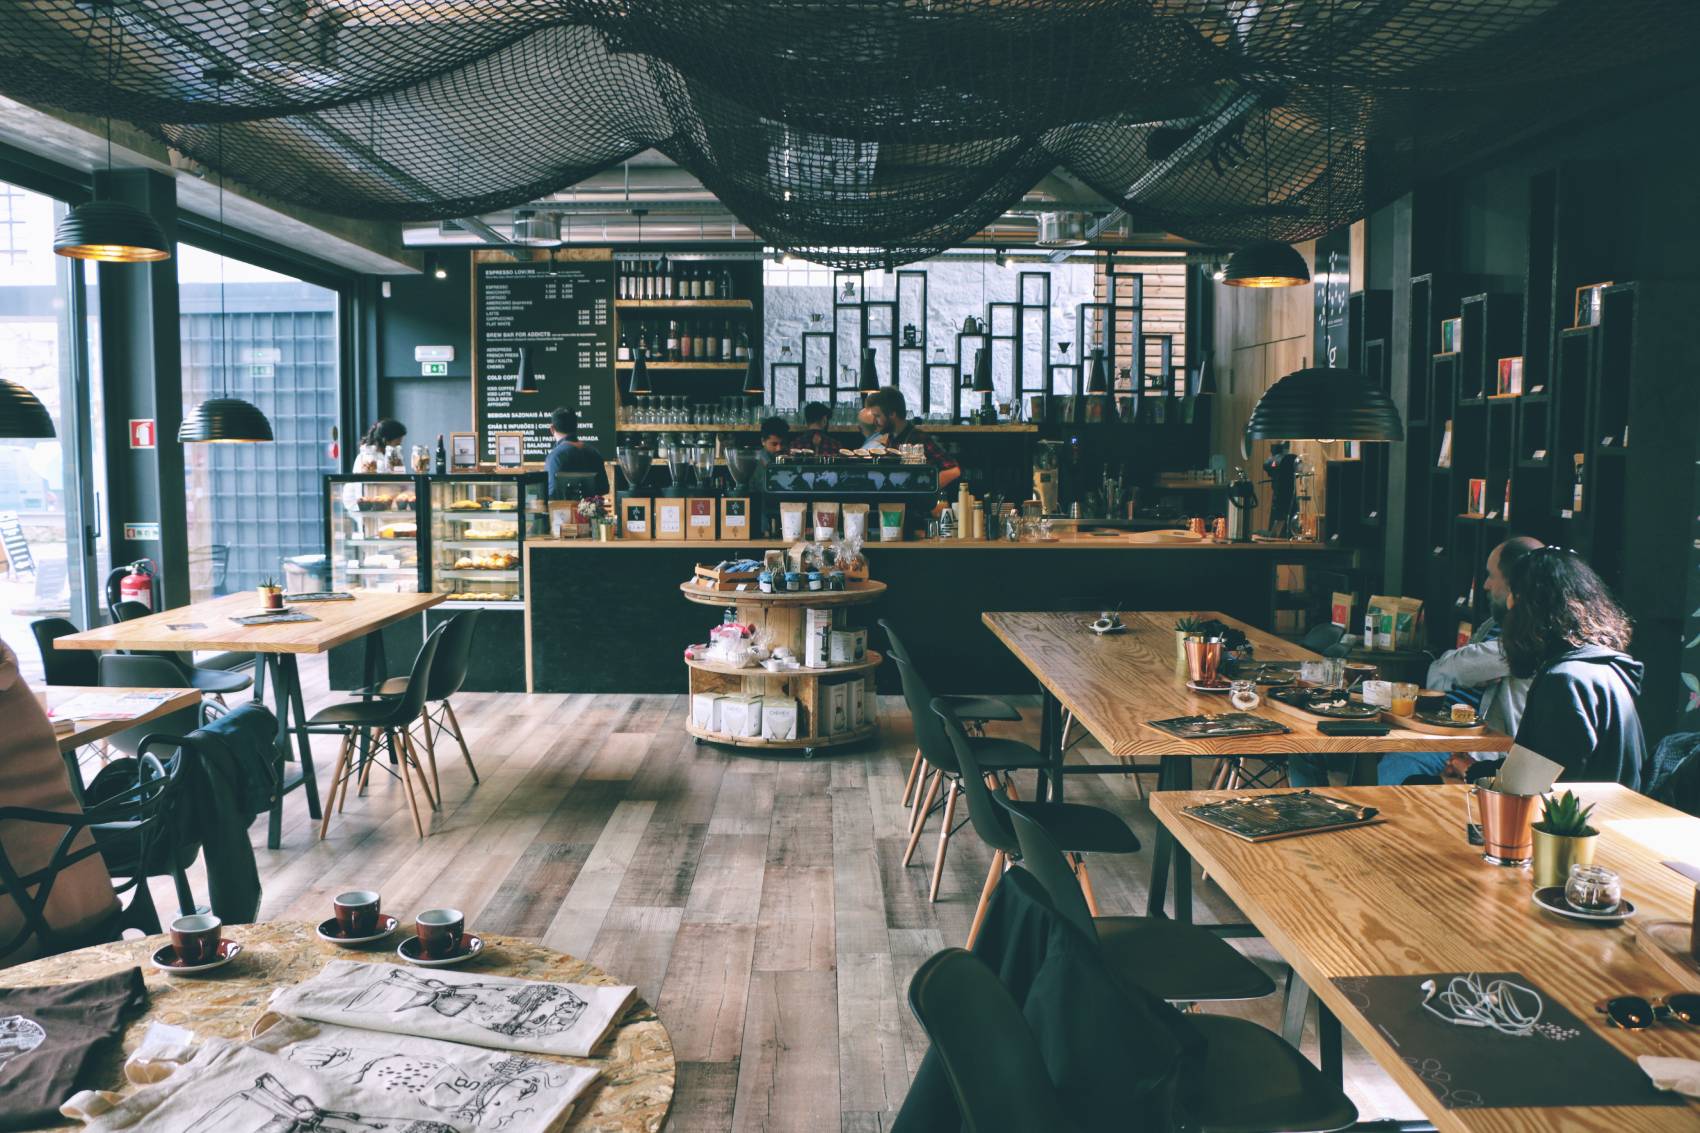 Image Comment trouver un café avec wifi pour travailler ?